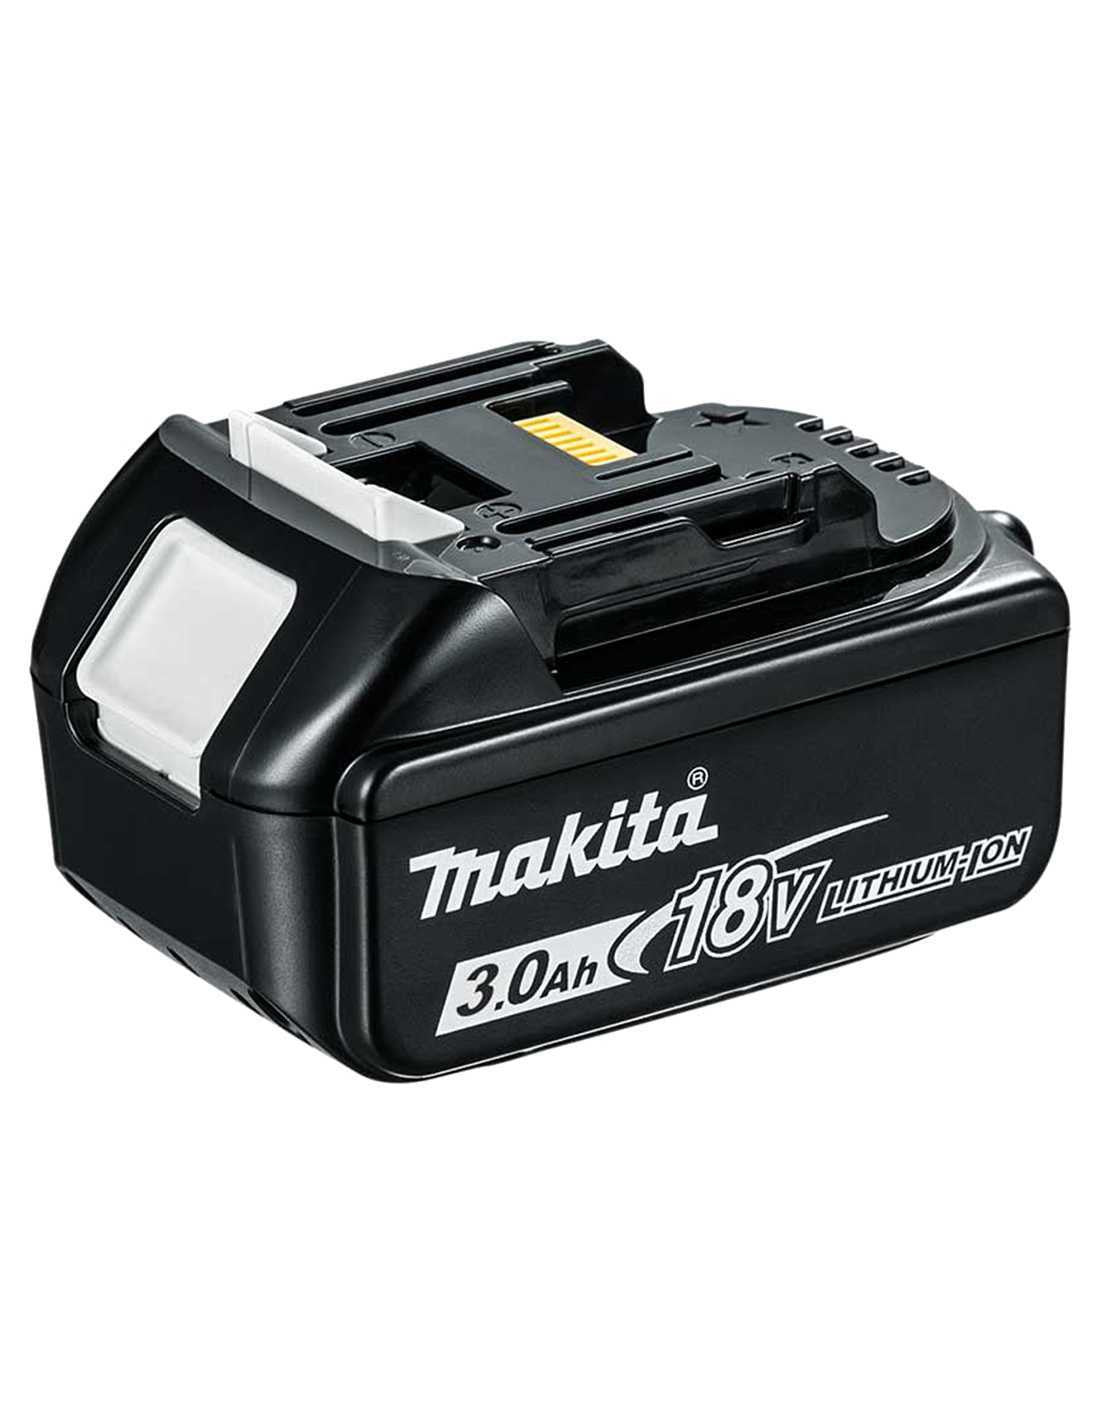 Makita Kit avec 10 outils + 3 battes + chargeur + 2 pochettes DLX1071BL3